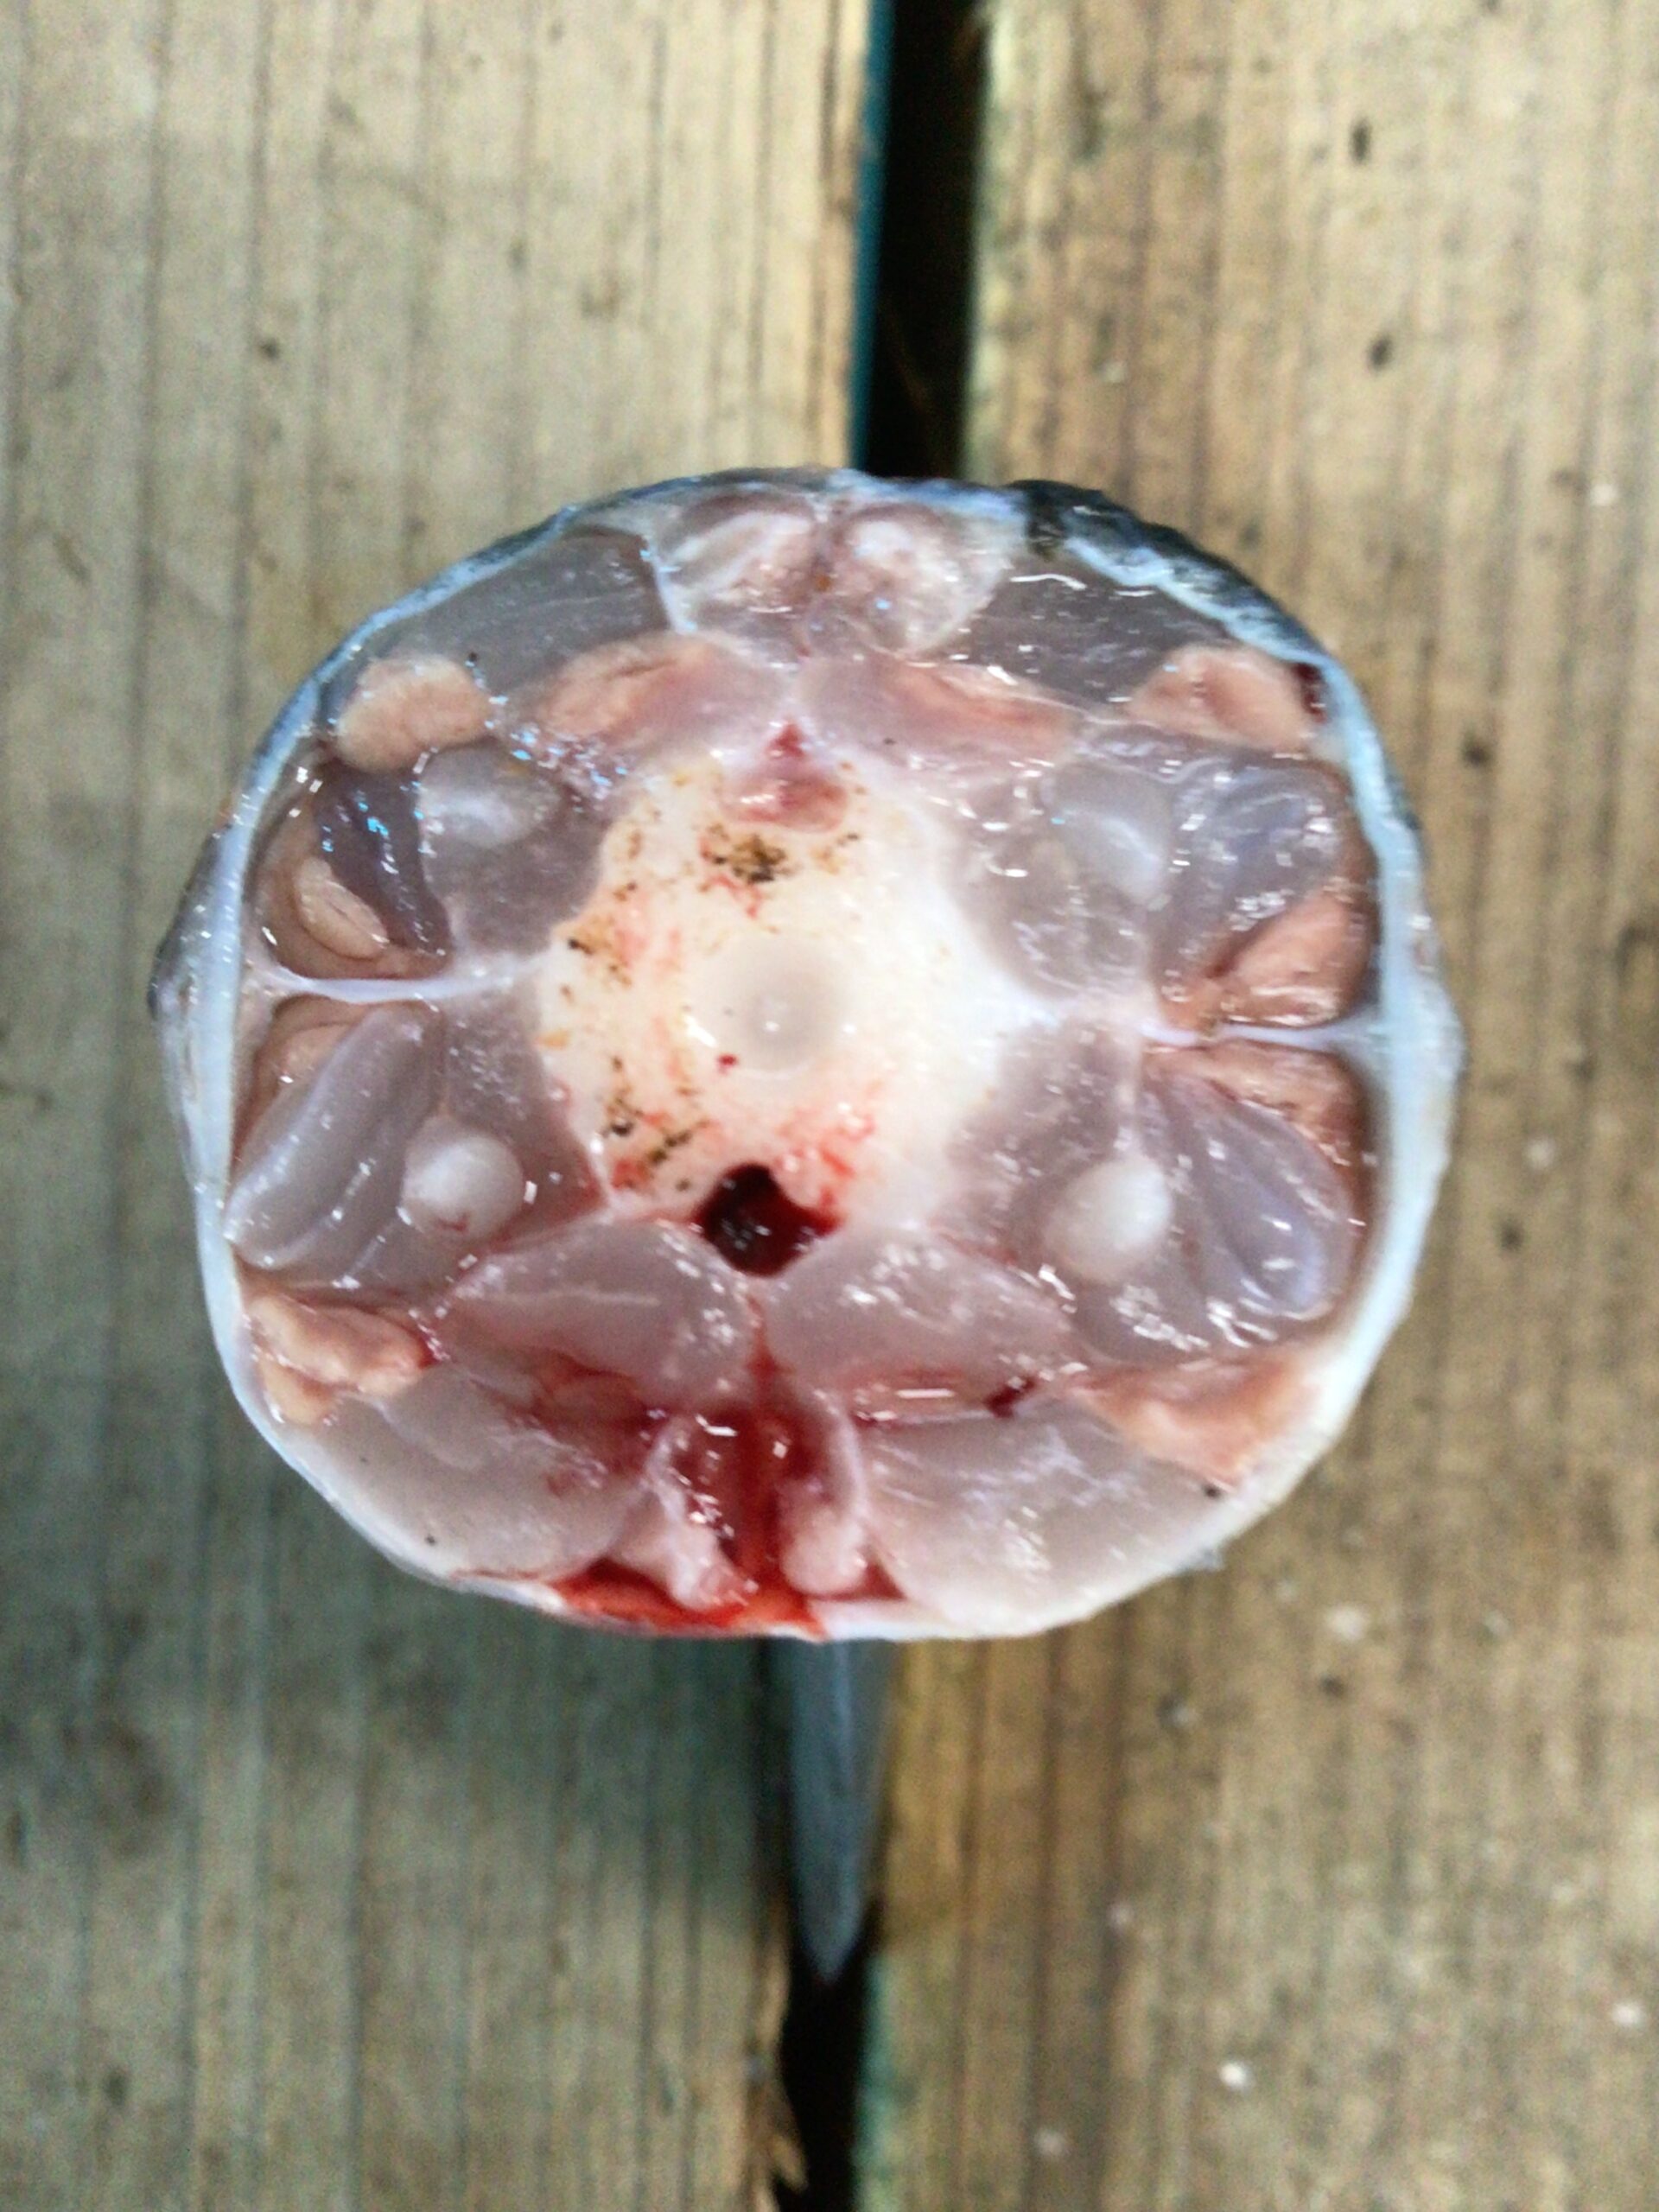 魚の断面写真。中央の白い円形が背骨。真上の小さな三角が神経。真下の赤い部分が血管。釣太郎の魚部位説明。